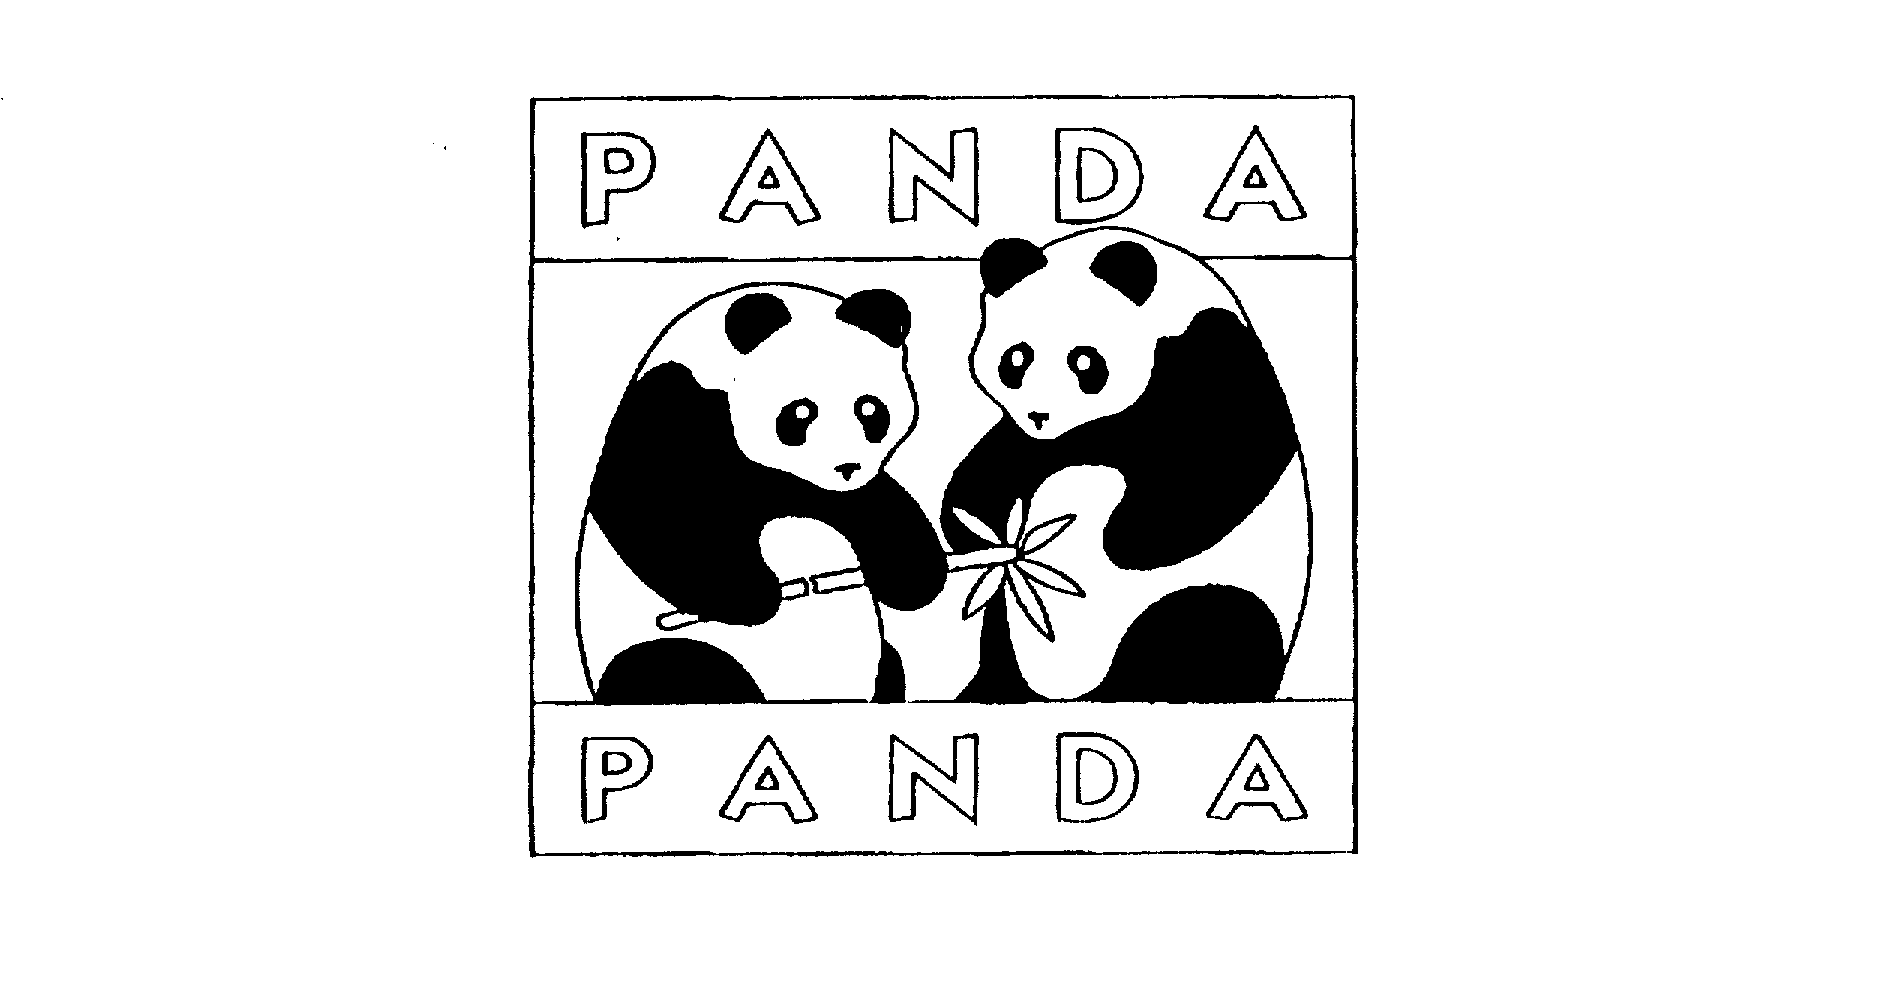  PANDA PANDA